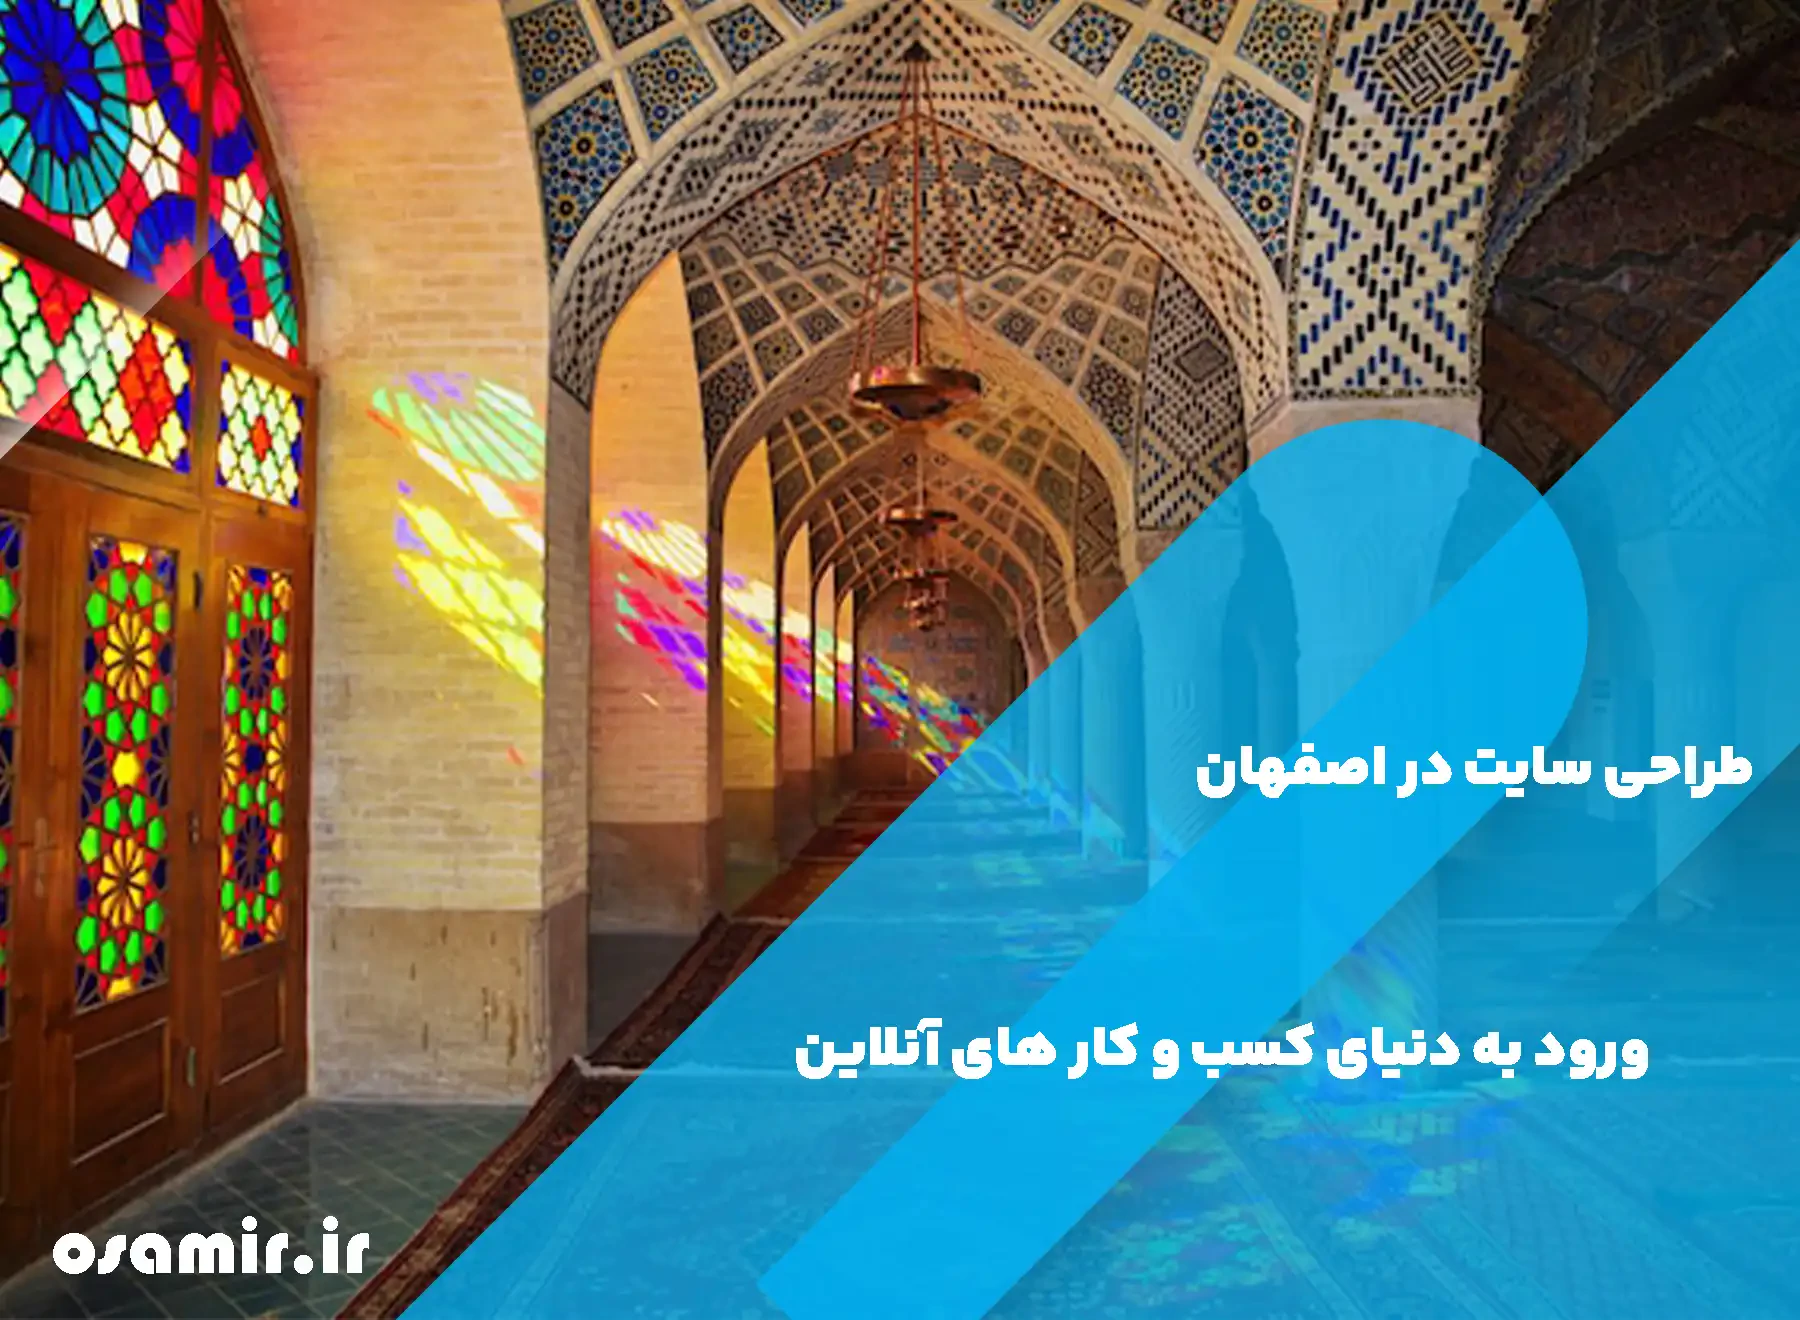 نیاز اصفهان به طراح سایت